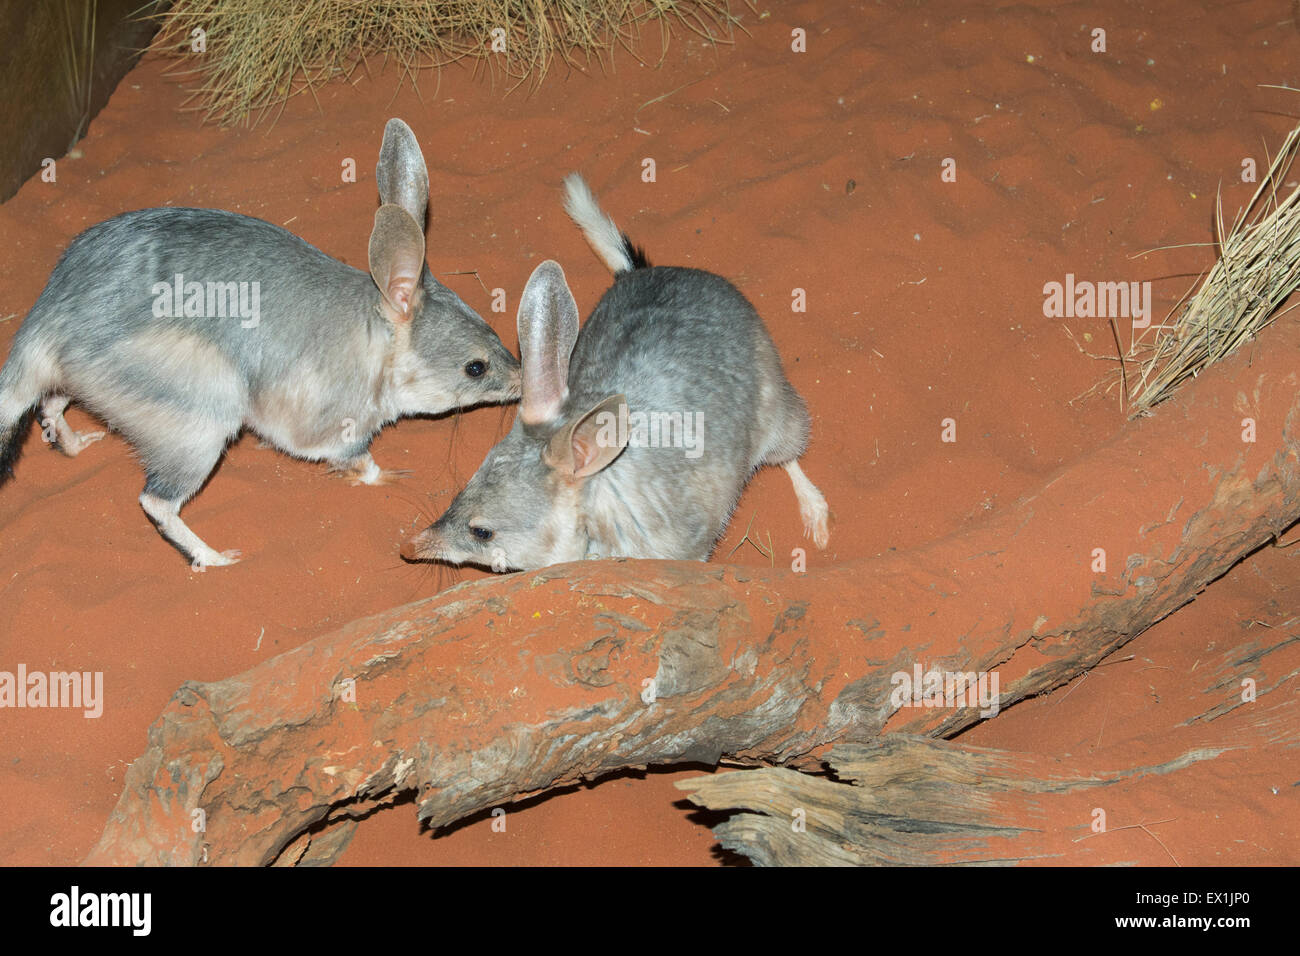 Australia, NT, Alice Springs. Il Parco del Deserto Alice Springs. Bilby (Captive: Macrotis lagotis). Foto Stock